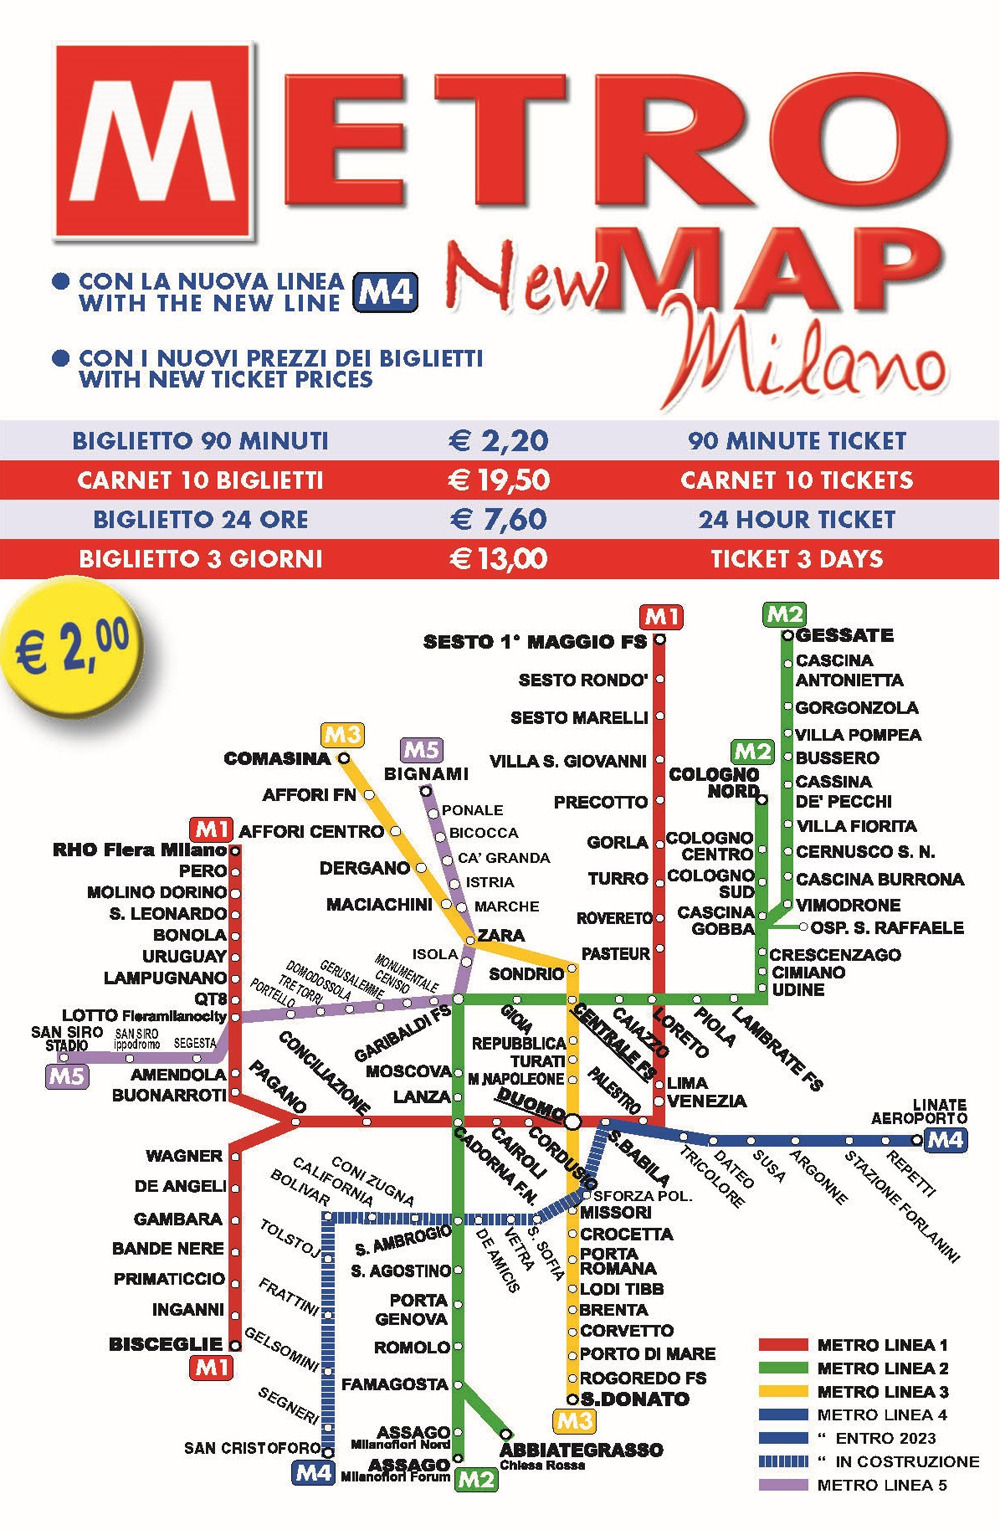 New metro map Milano